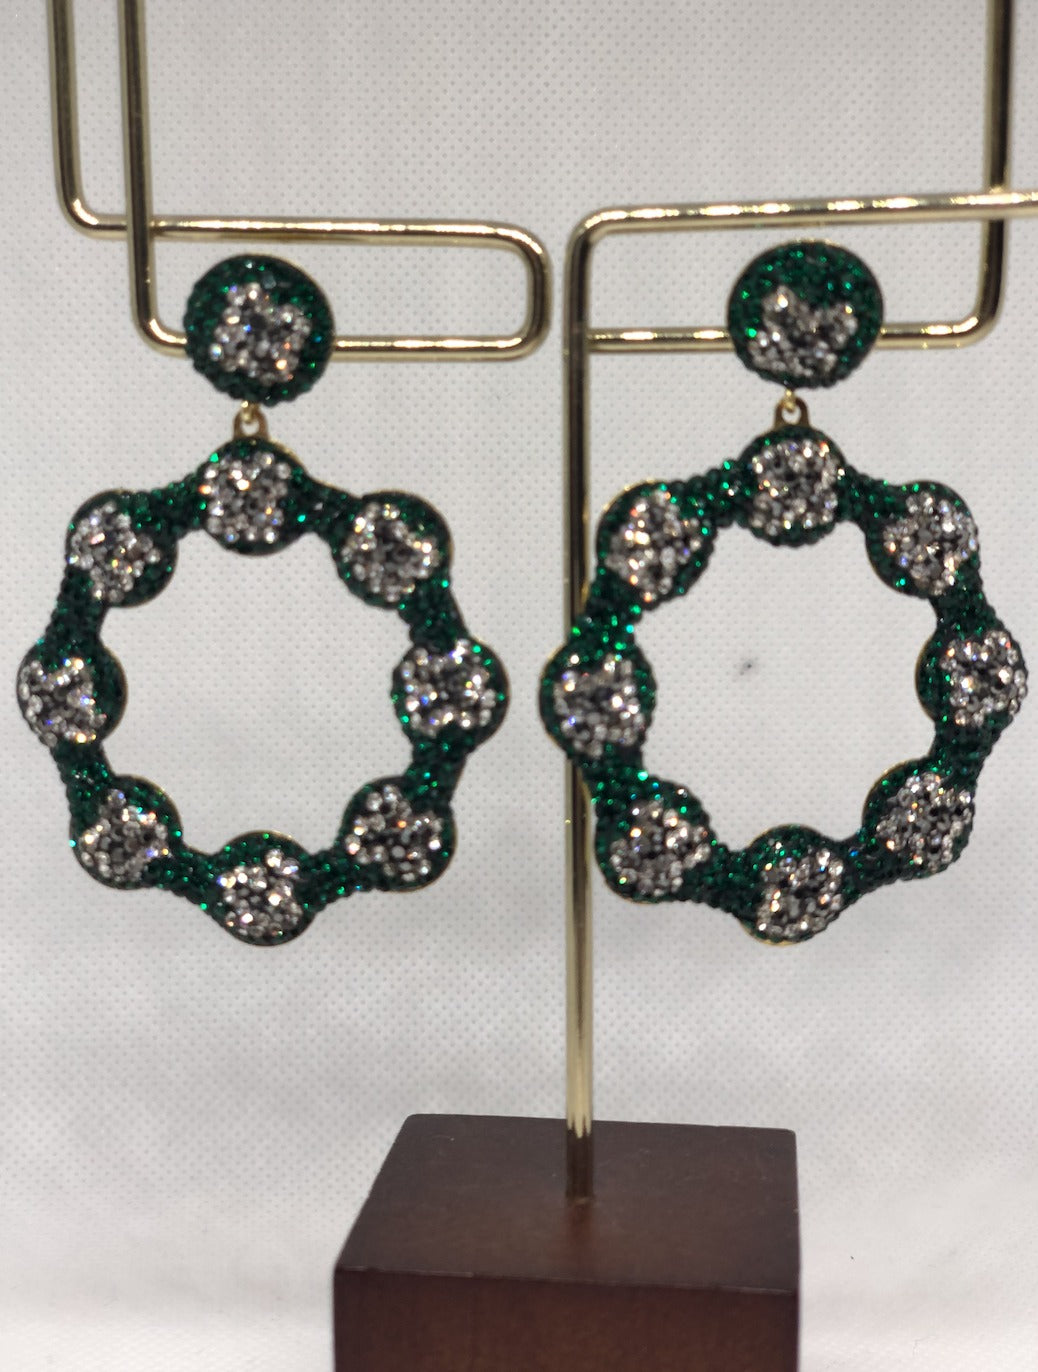 The Green Silver Daisy Earrings